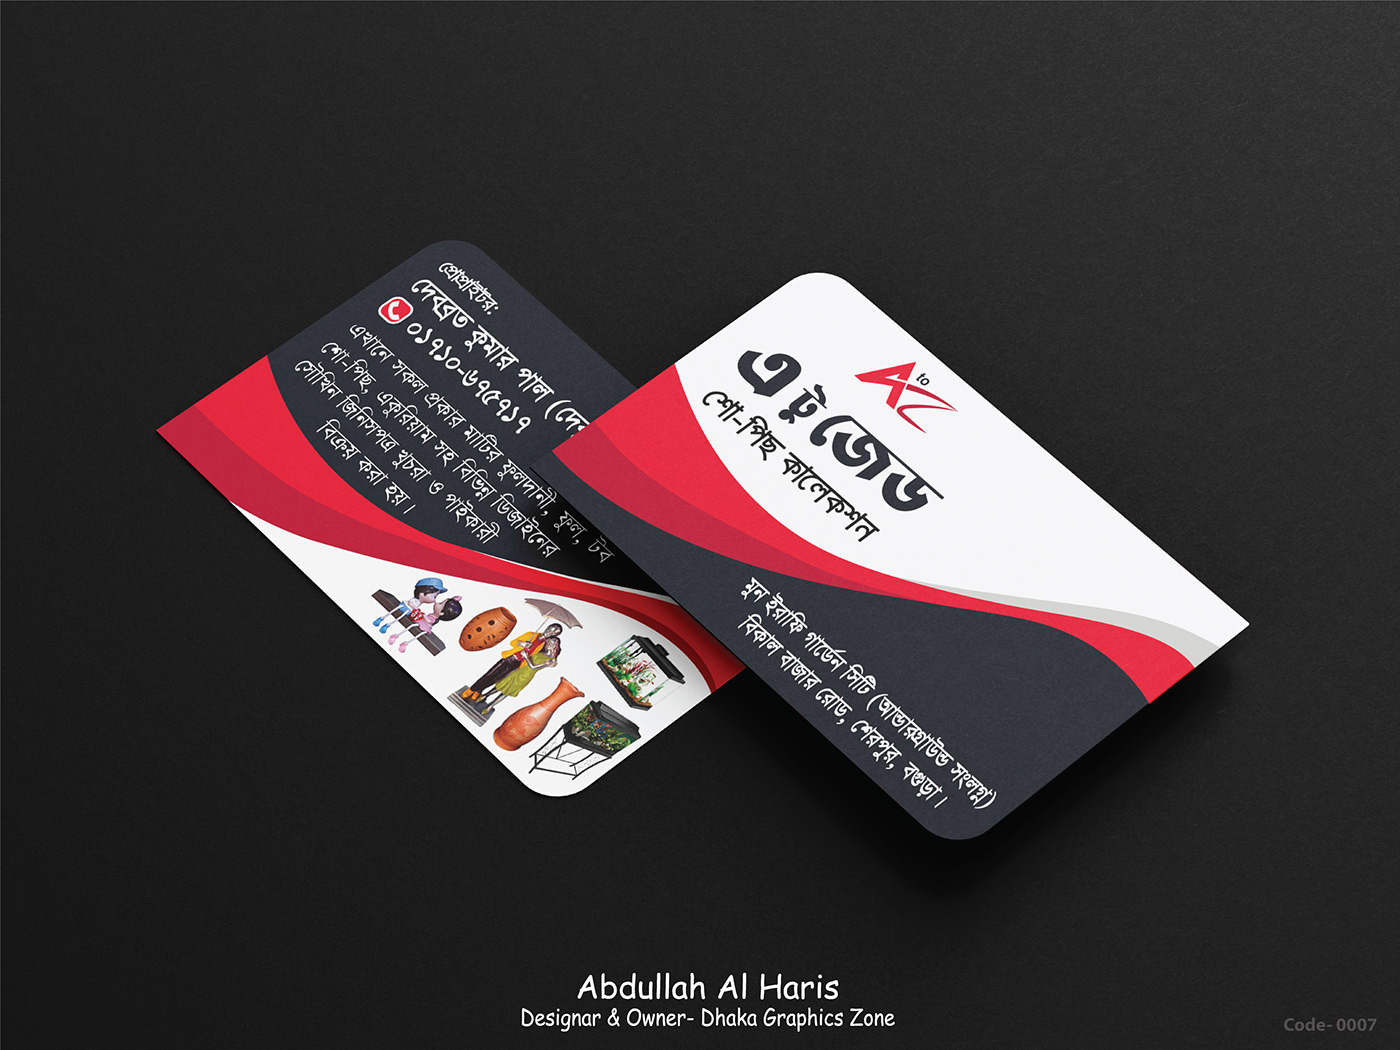 abdullah Al haris Haris Design visiting card design visiting card Business Cards business cards design creative card creative card design farnichar card farnichar visiting card